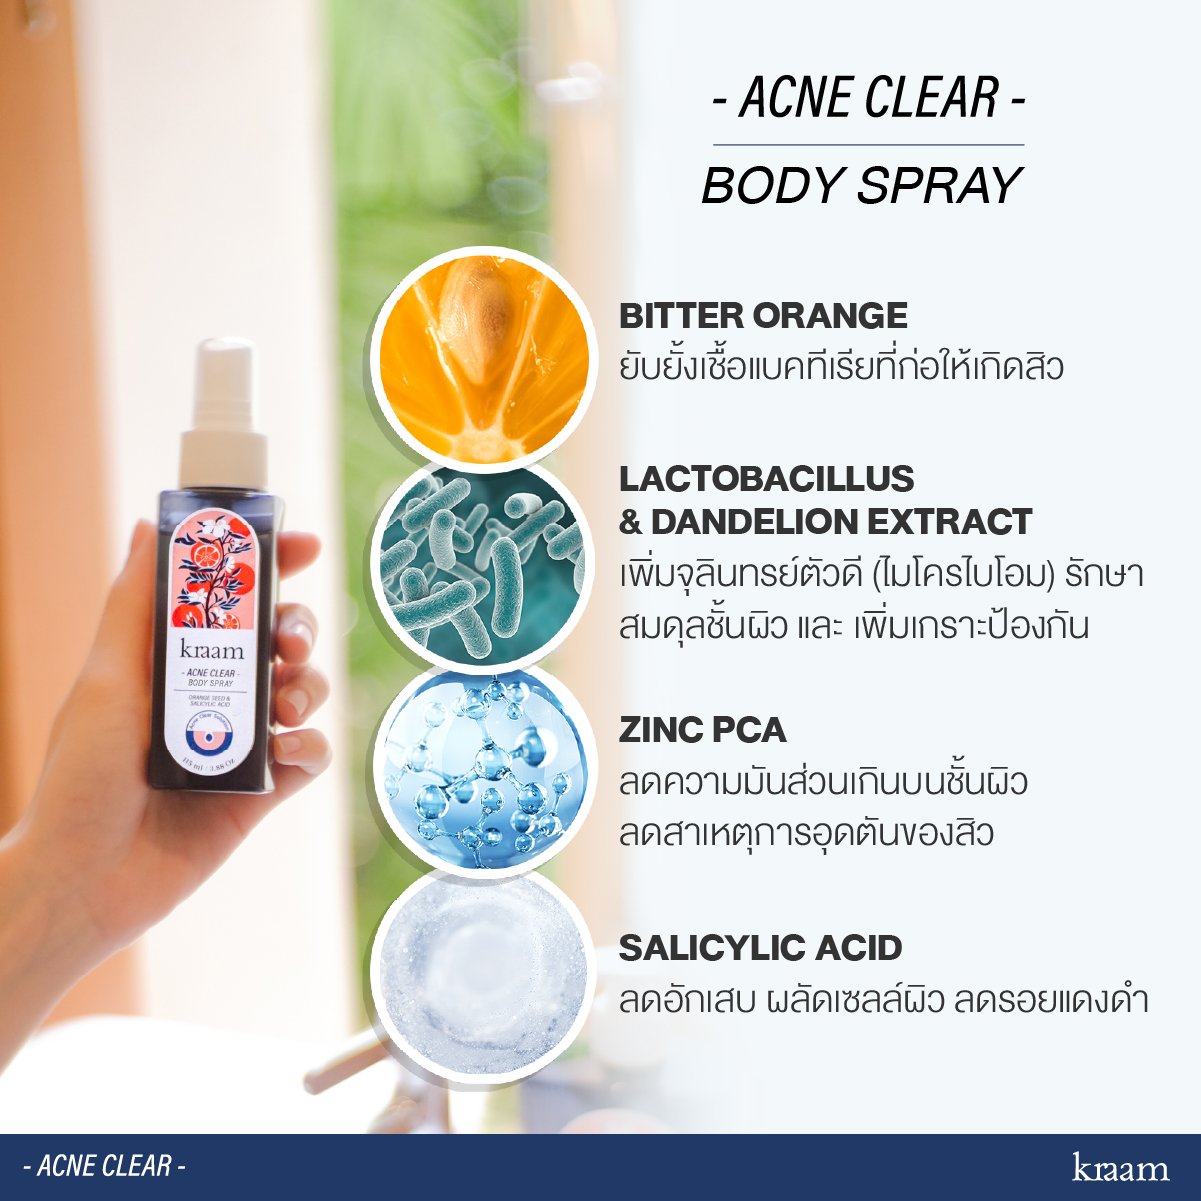 แนะนำ Kraam -ACNE CLEAR- เคลียร์ครบจบปัญหาสิวกาย ด้วยเจลอาบน้ำและสเปรย์ลดสิว สูตร Orange Seed & Salicylic Acid